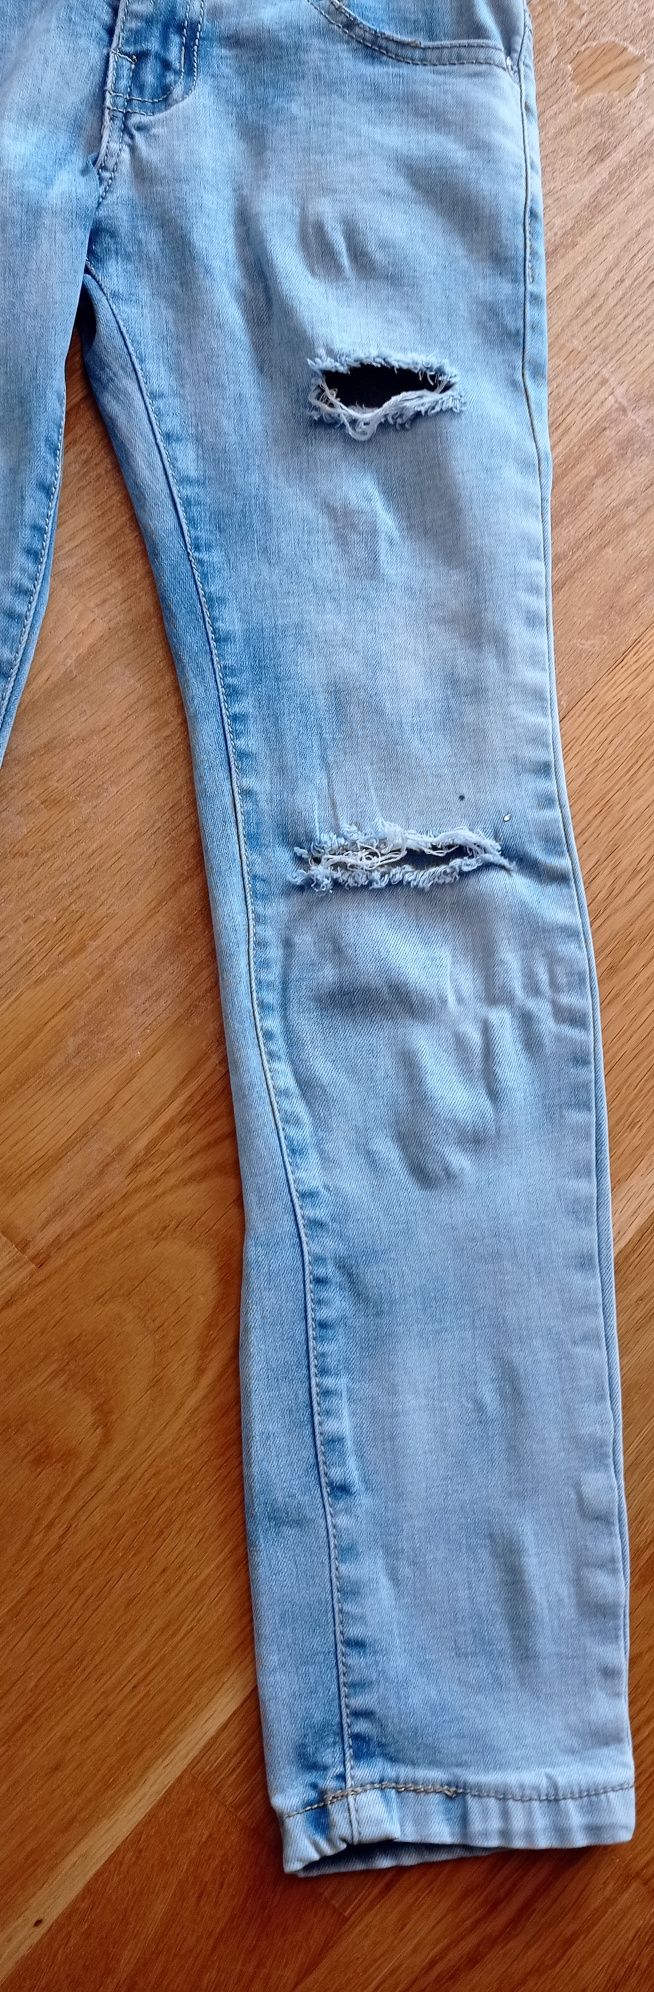 US Kids & Styl jasnoniebieski jeansowy kombinezon dziewczęcy r. 8 lat